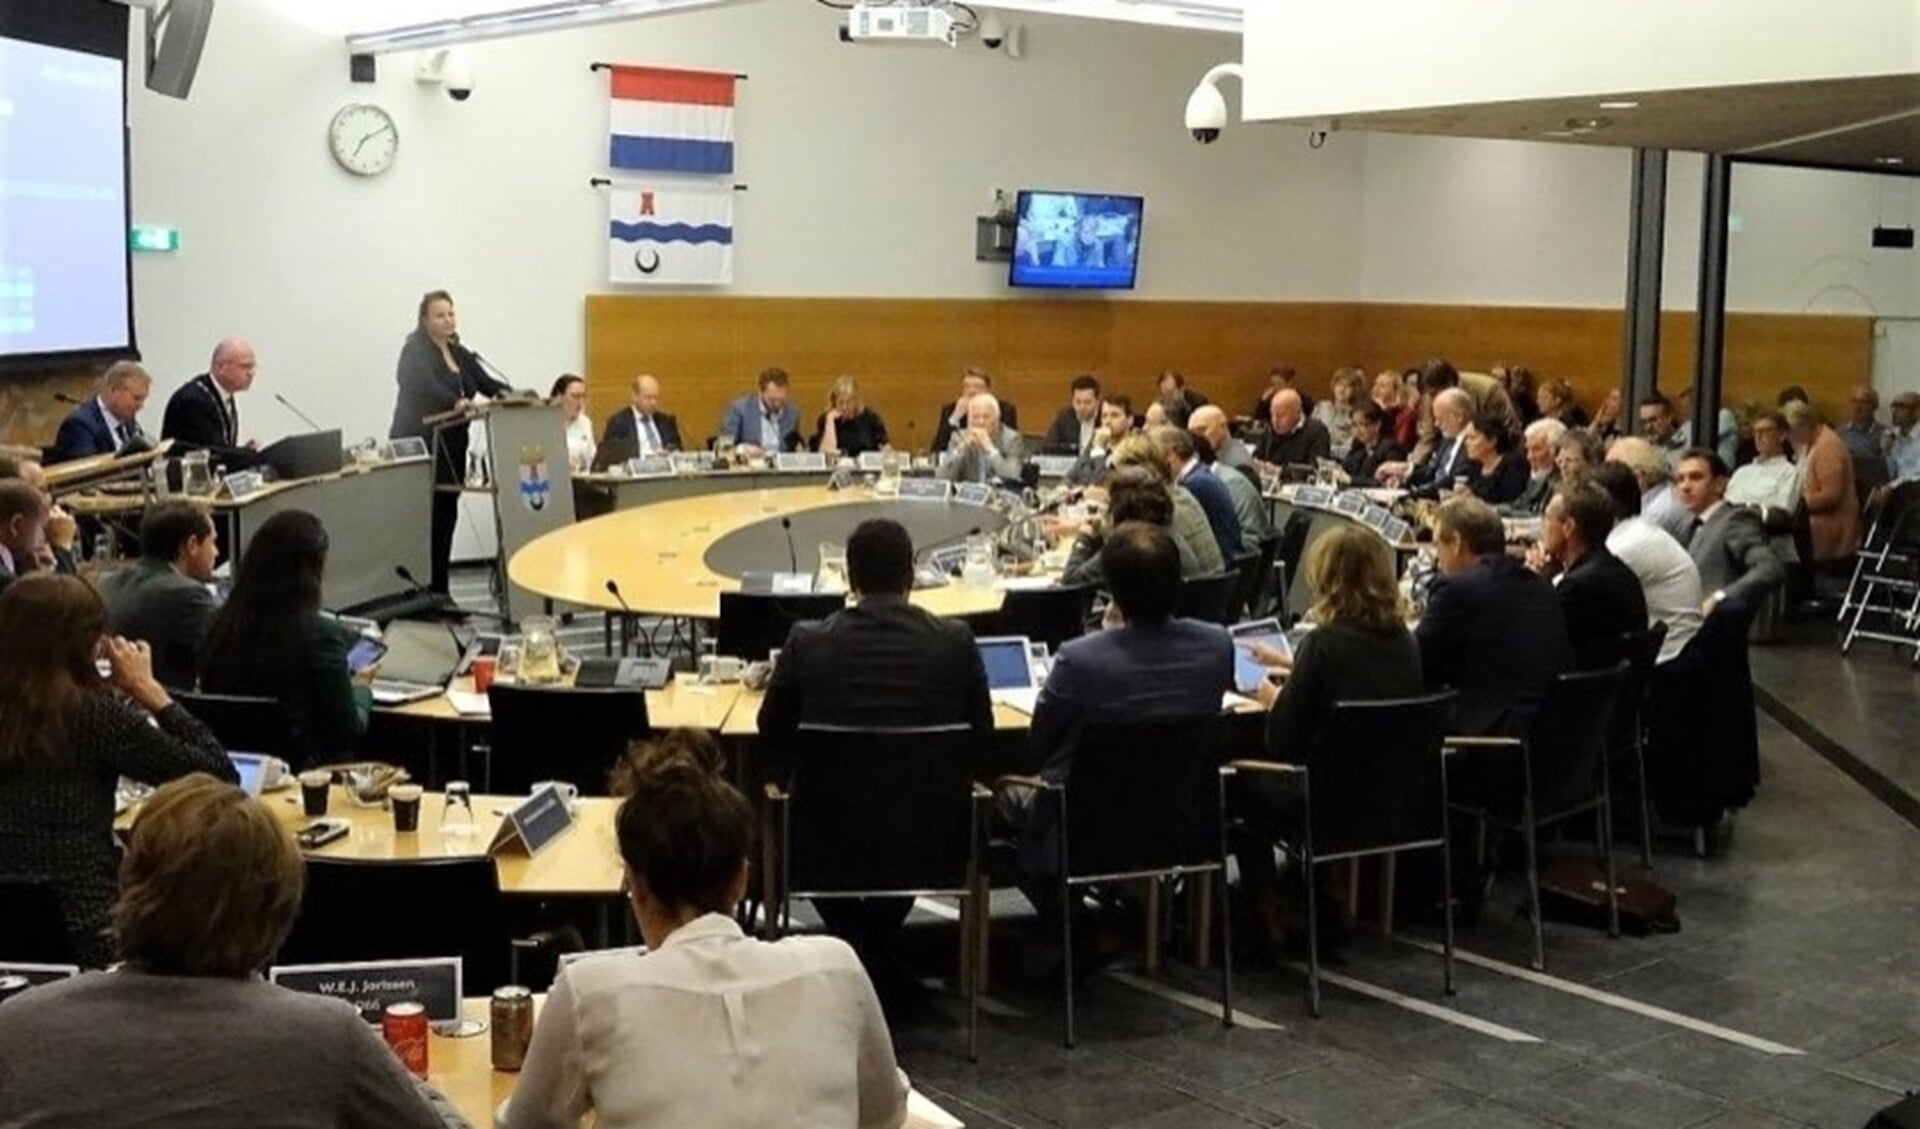 De gemeenteraad bijeen in vergadering (archieffoto).